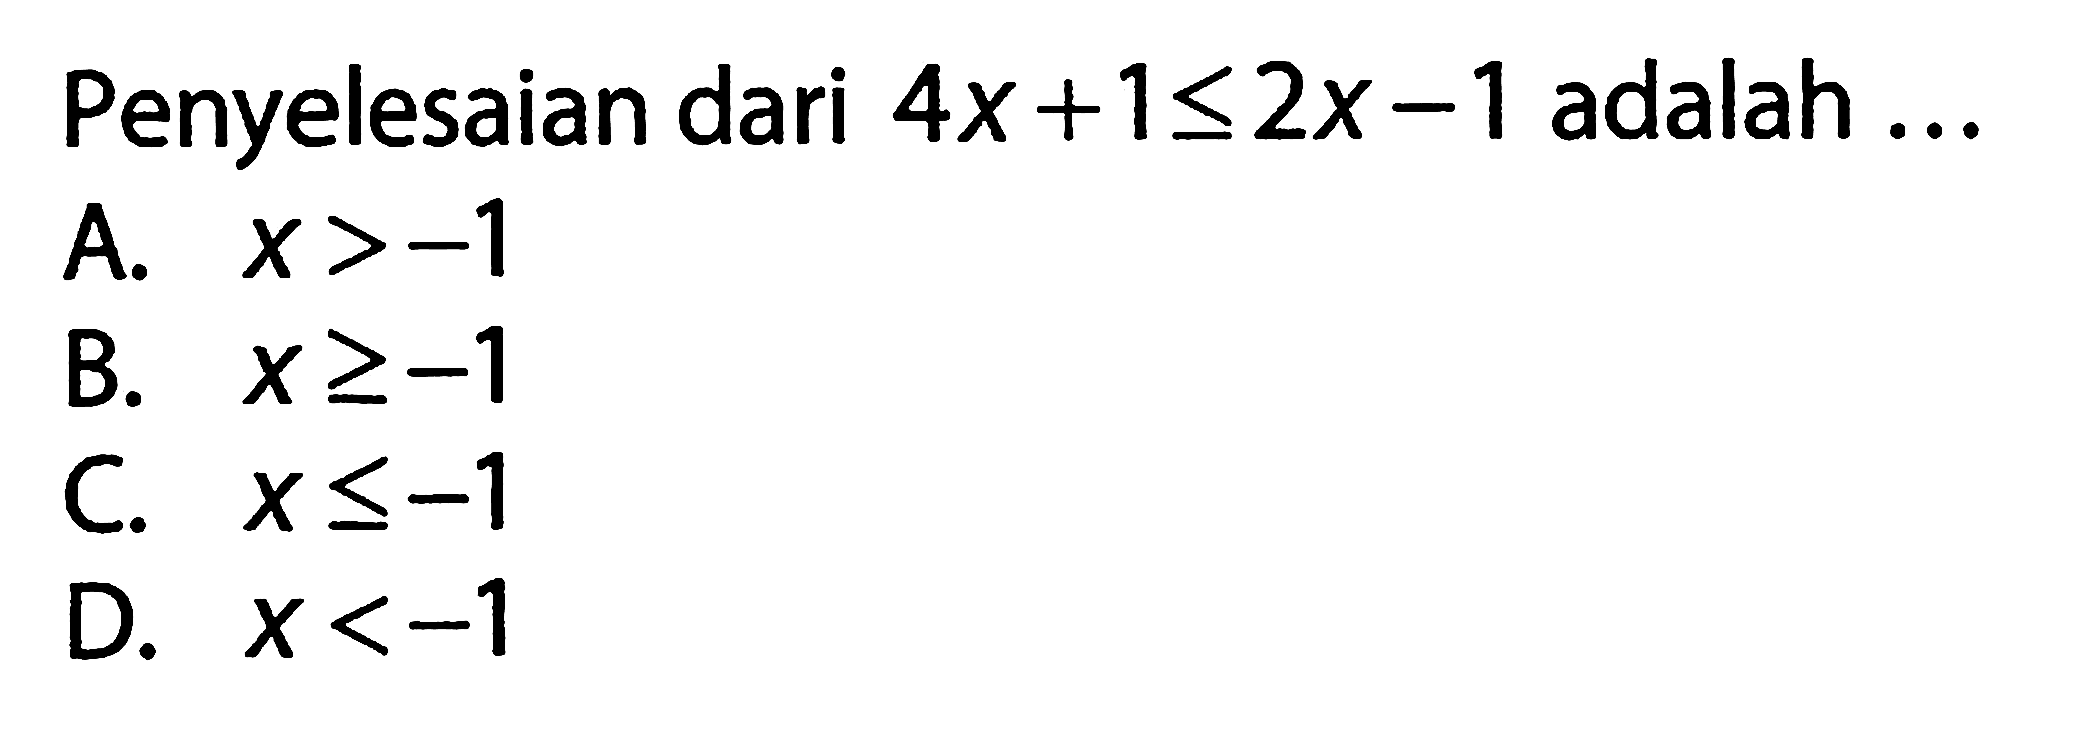 Penyelesaian dari 4x + 1 <= 2x - 1 adalah . . .